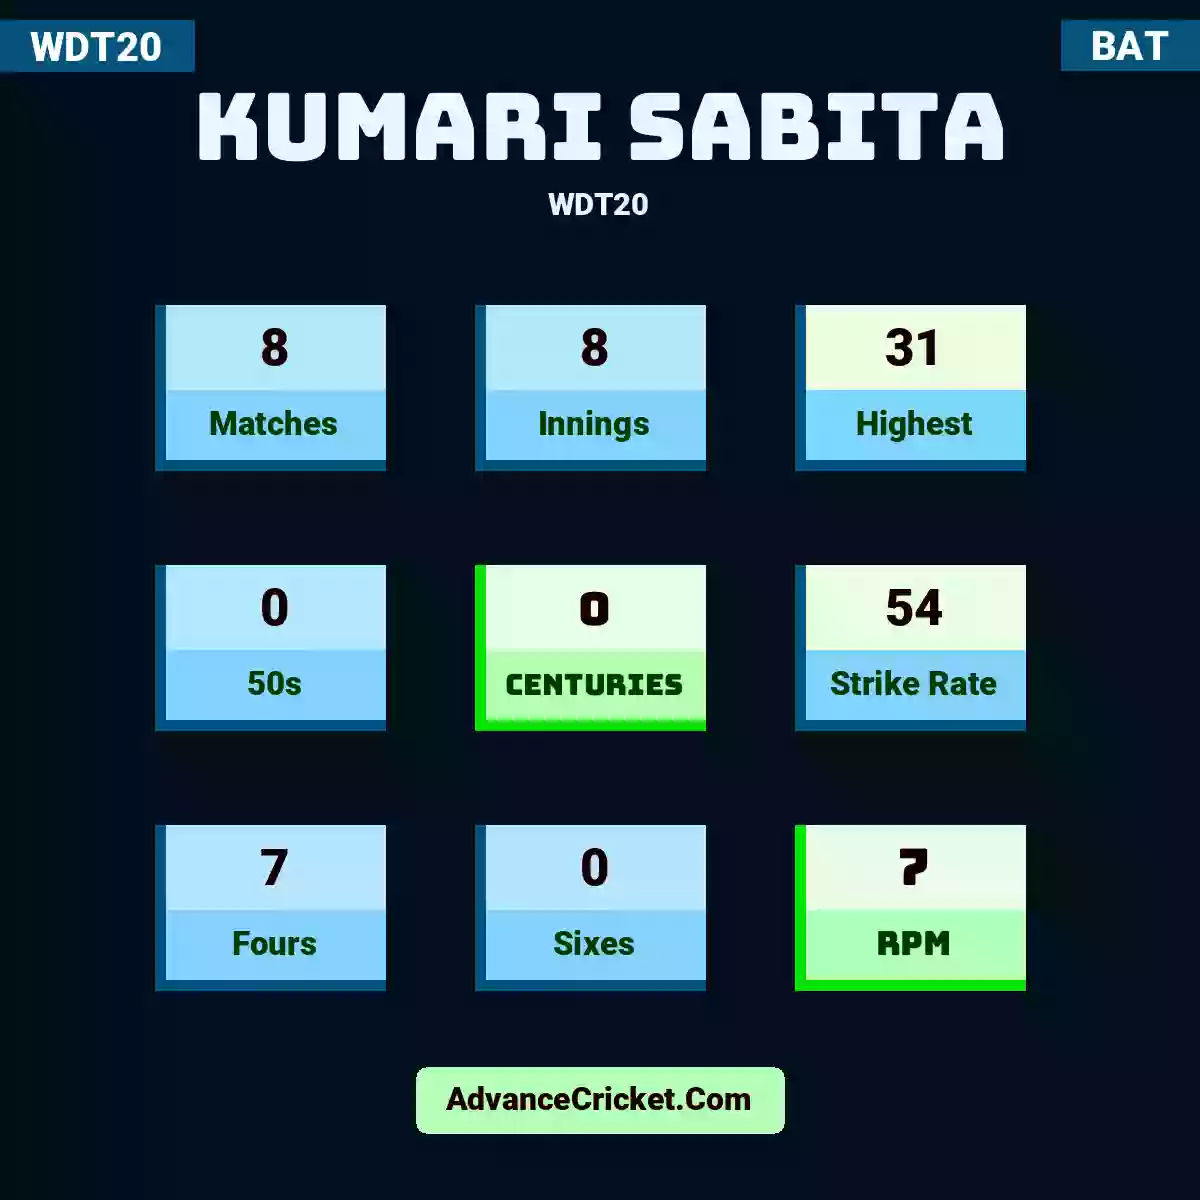 Kumari Sabita WDT20 , Kumari Sabita played 8 matches, scored 31 runs as highest, 0 half-centuries, and 0 centuries, with a strike rate of 54. K.Sabita hit 7 fours and 0 sixes, with an RPM of 7.